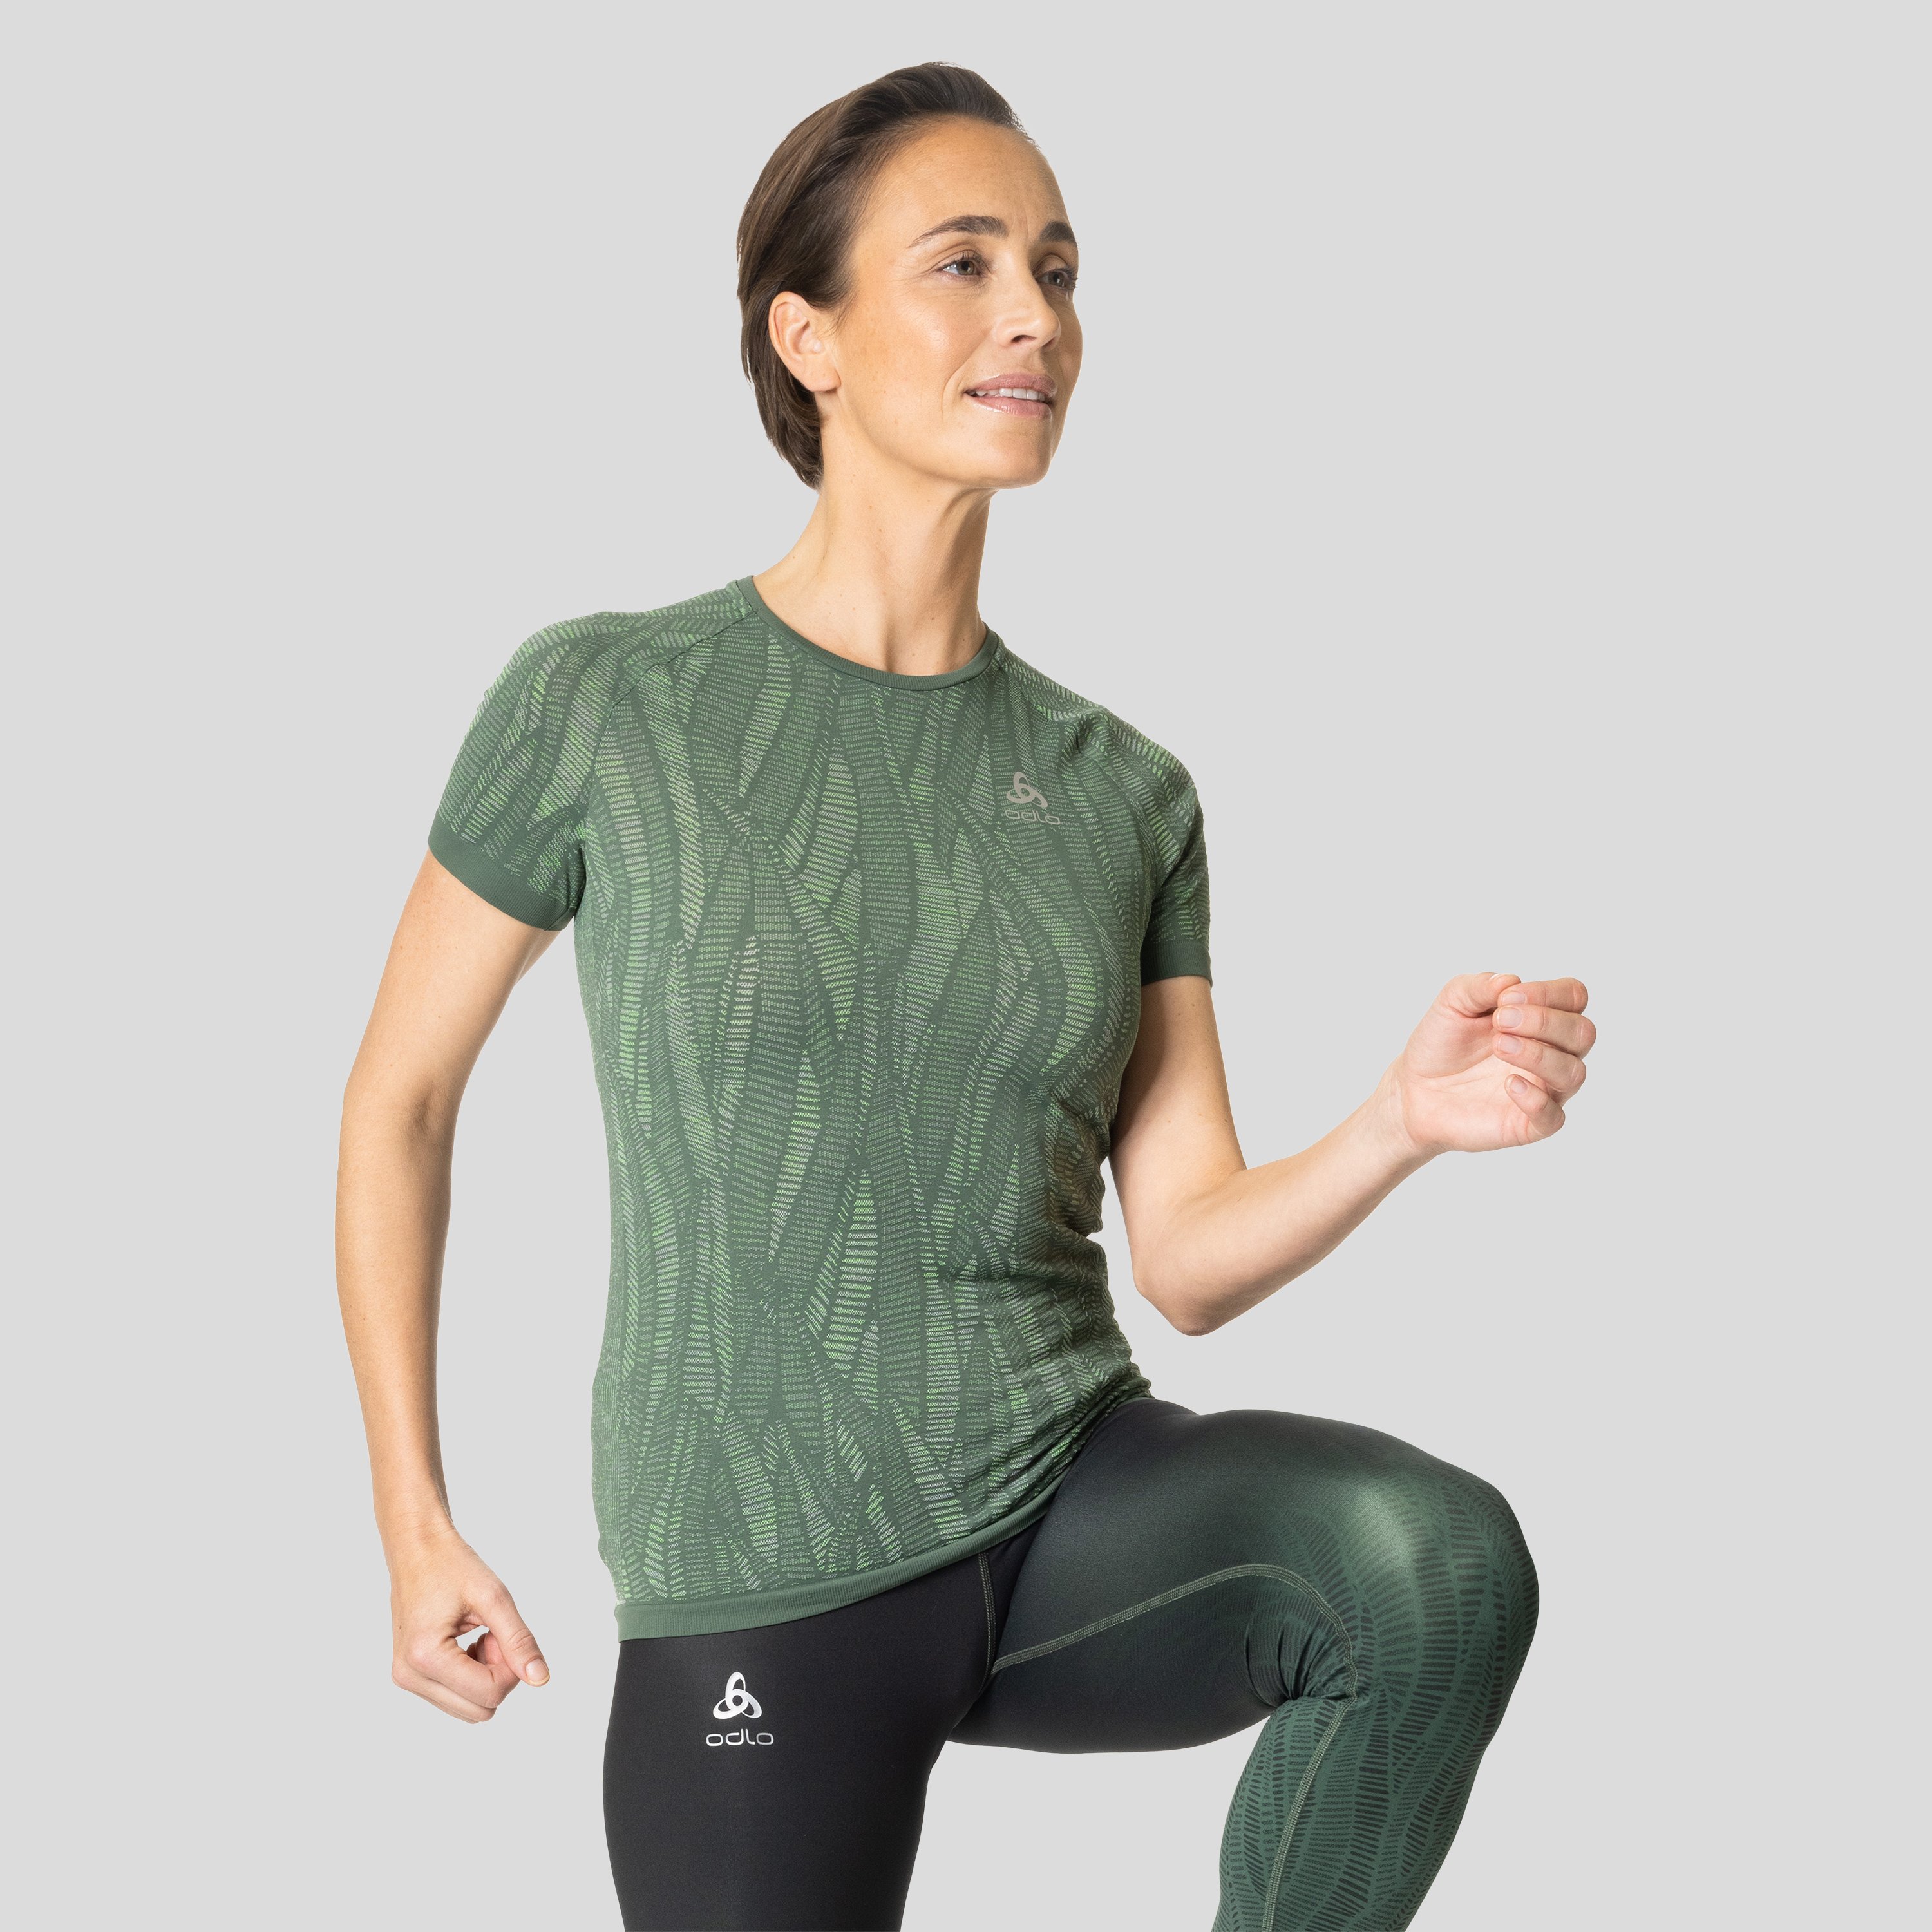 ODLO Zeroweight Ceramicool Laufshirt für Damen, XL, grün